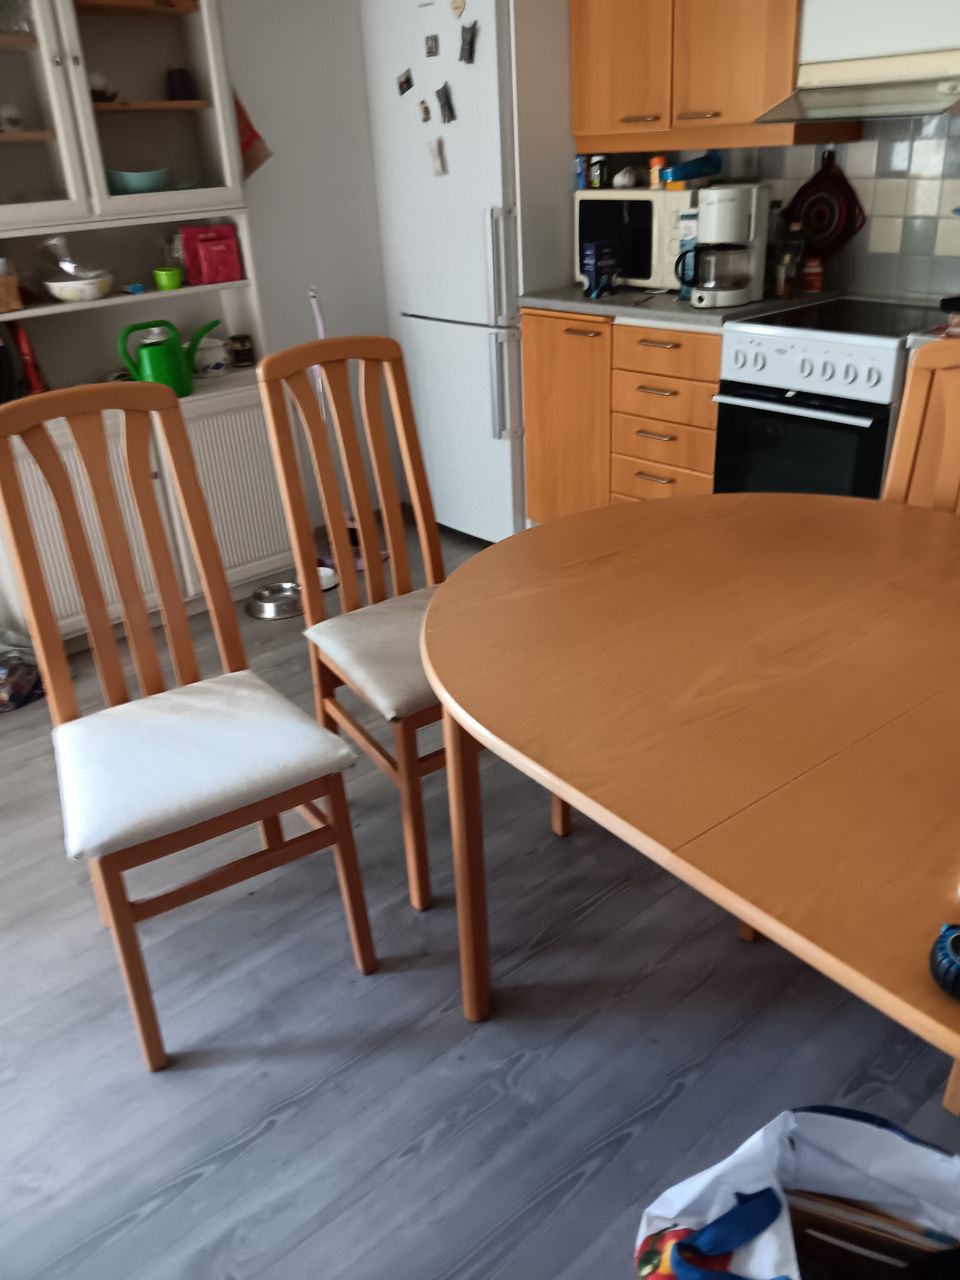 Ruokapöytä neljällä tuolilla. Pöydässä jatko-osa